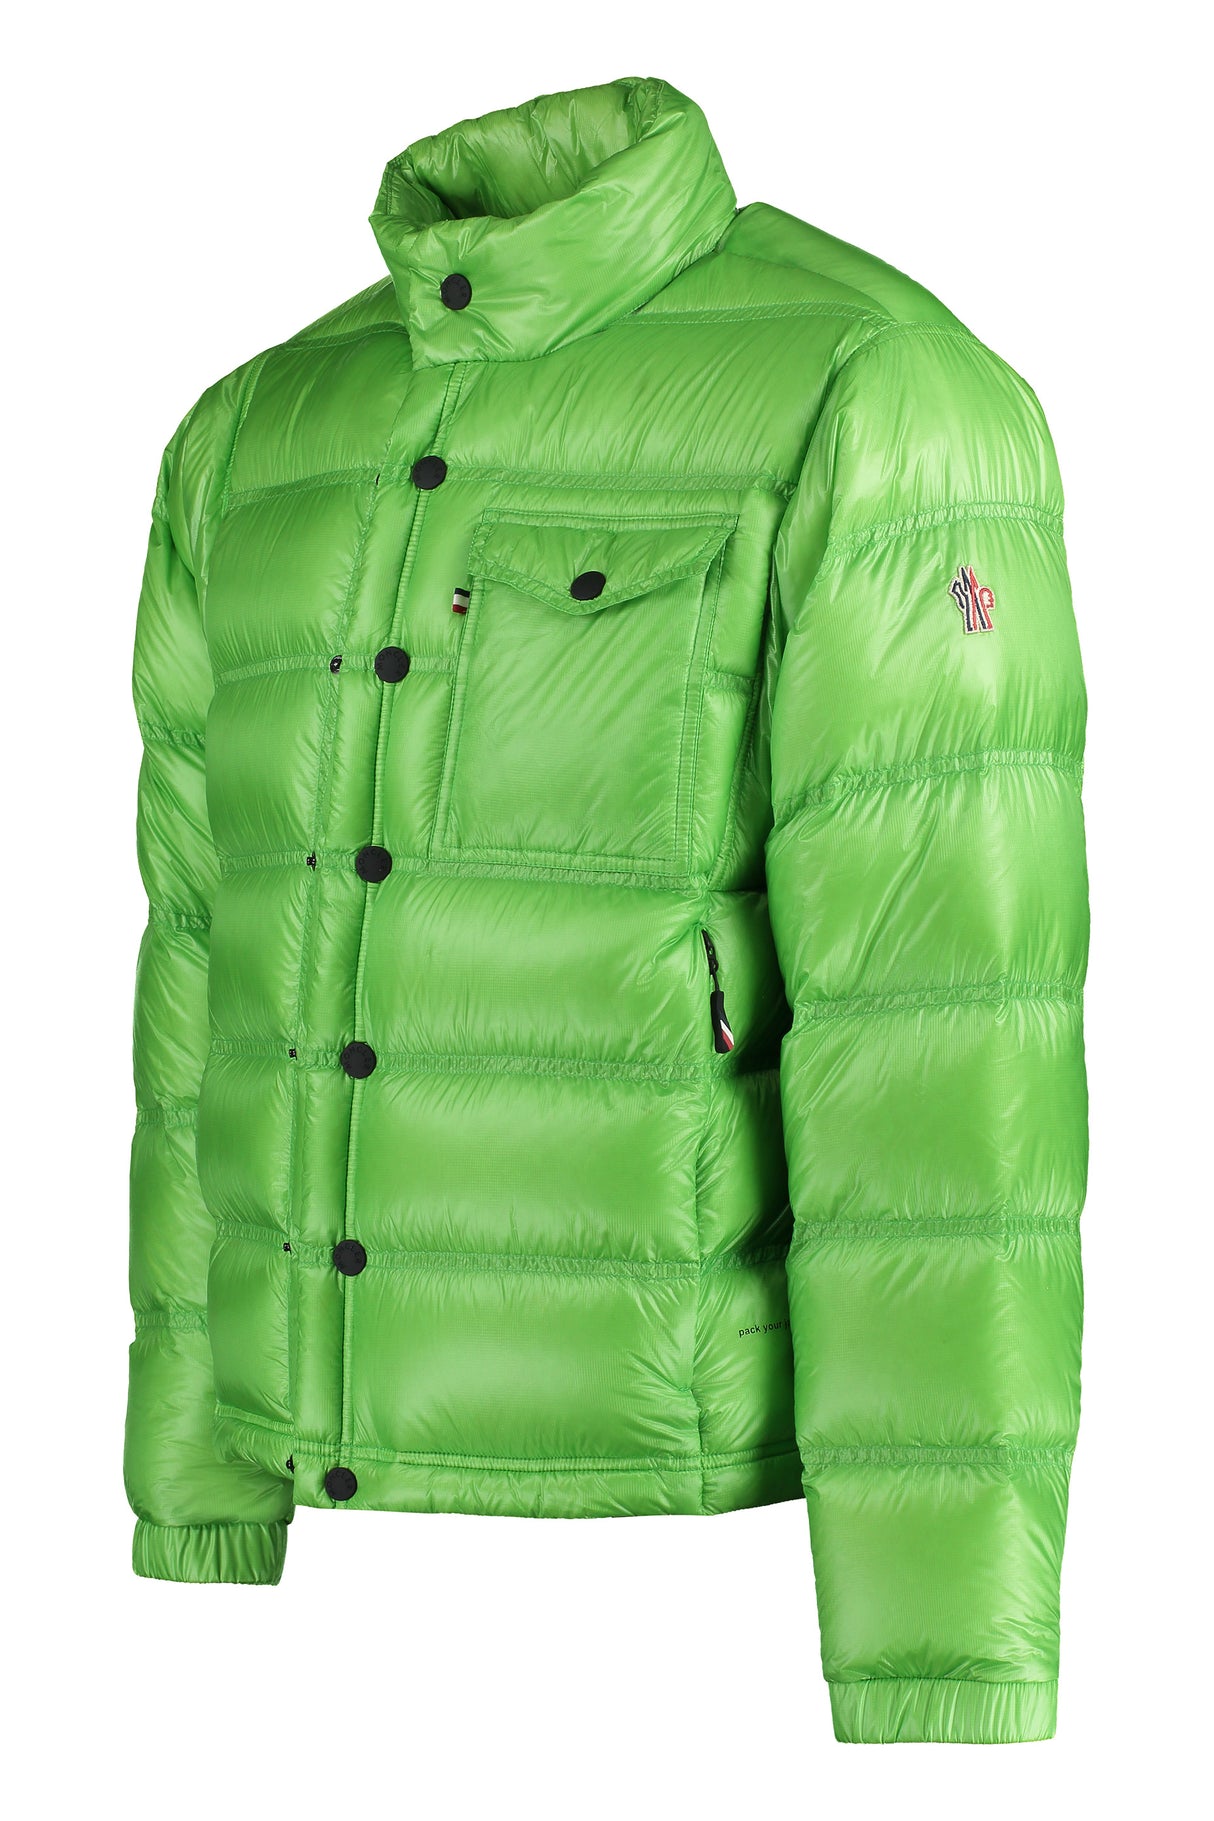 Áo khoác nam xuất khẩu được làm bằng chất liệu lông vũ màu xanh lá cây với tay che và cổ áo điểu chỉnh được - Bộ sưu tập FW23